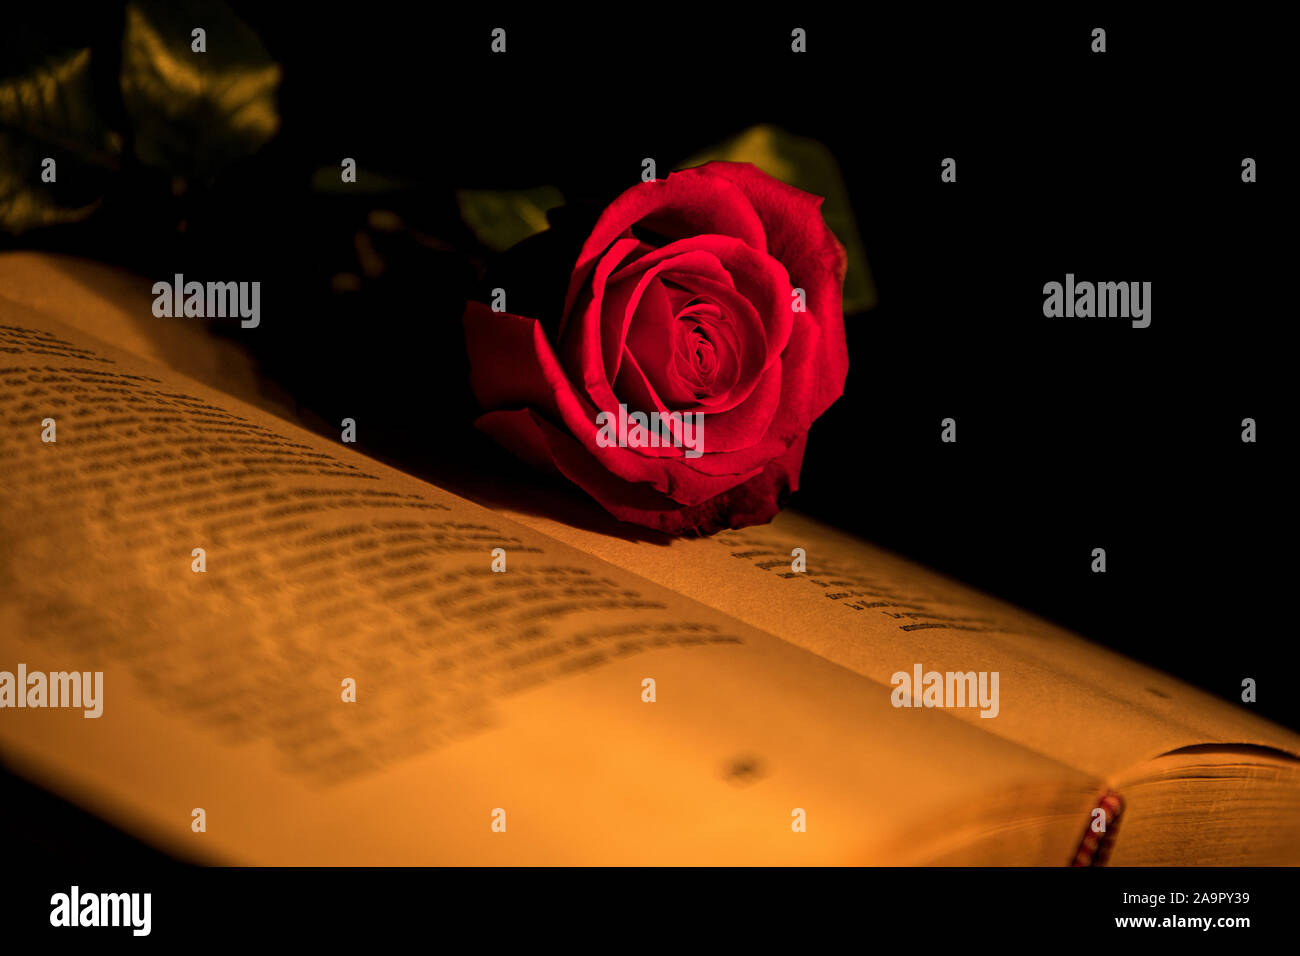 Eine rote Rose liegt auf einem offenen Buch Stockfoto